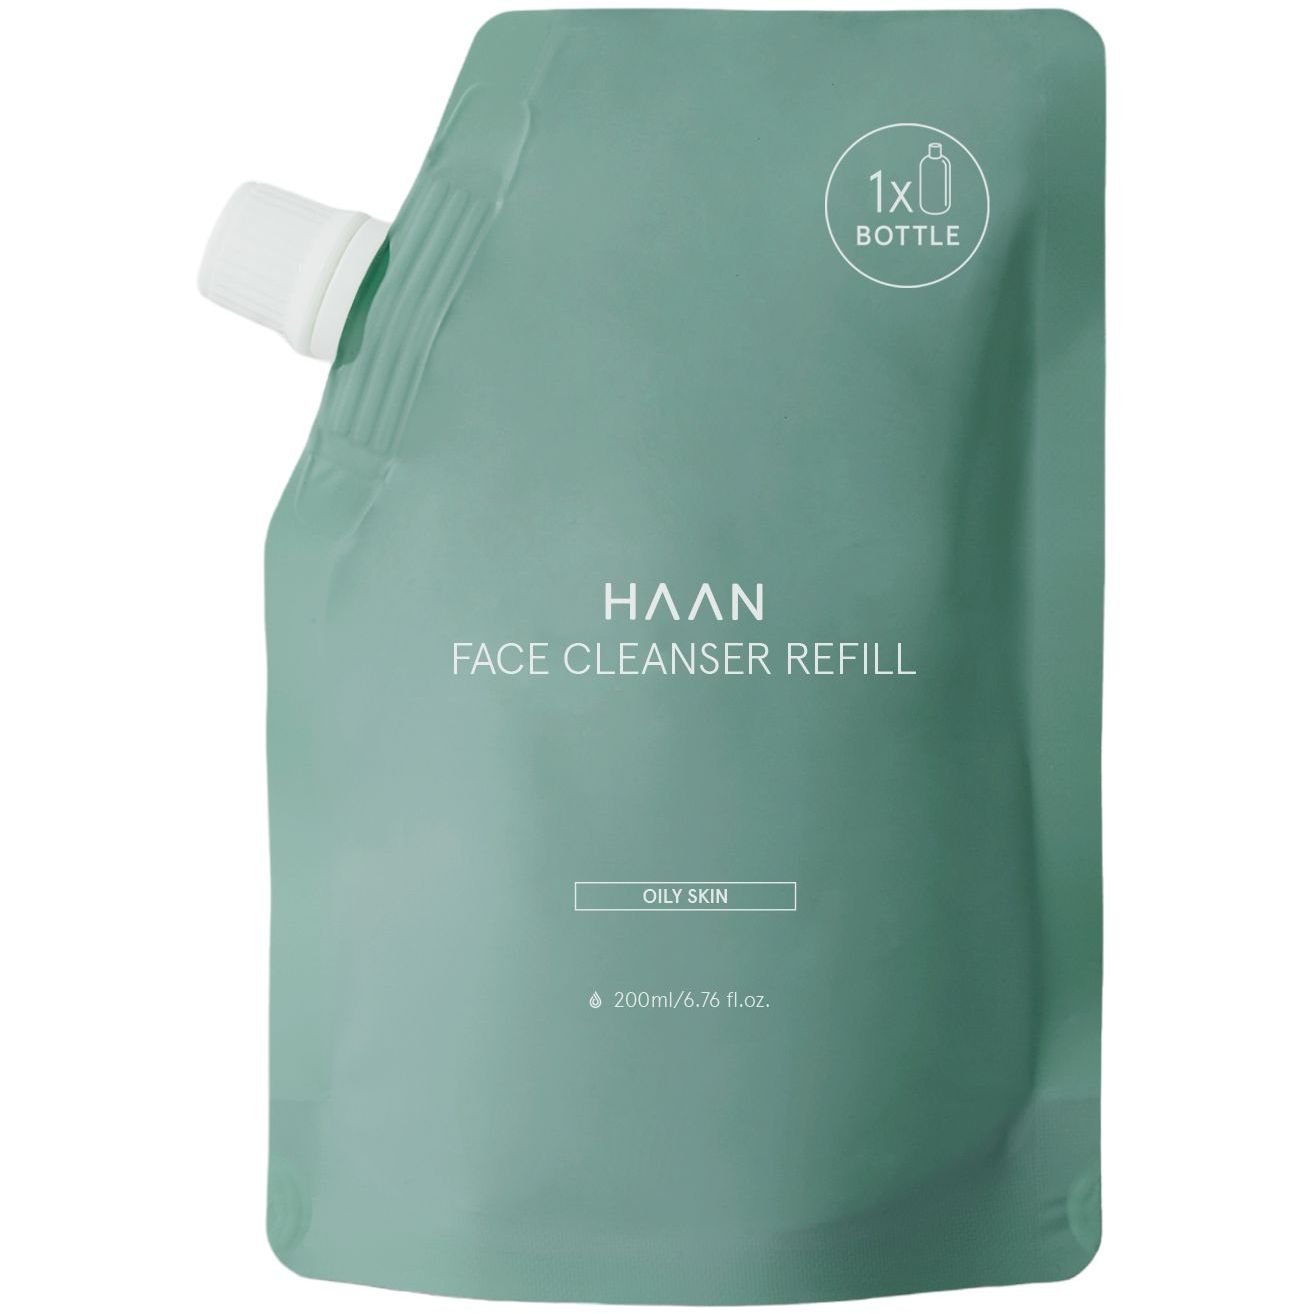 Photos - Facial / Body Cleansing Product Засіб для вмивання Haan Oily Skin, для жирної шкіри, запасний блок, 200 мл